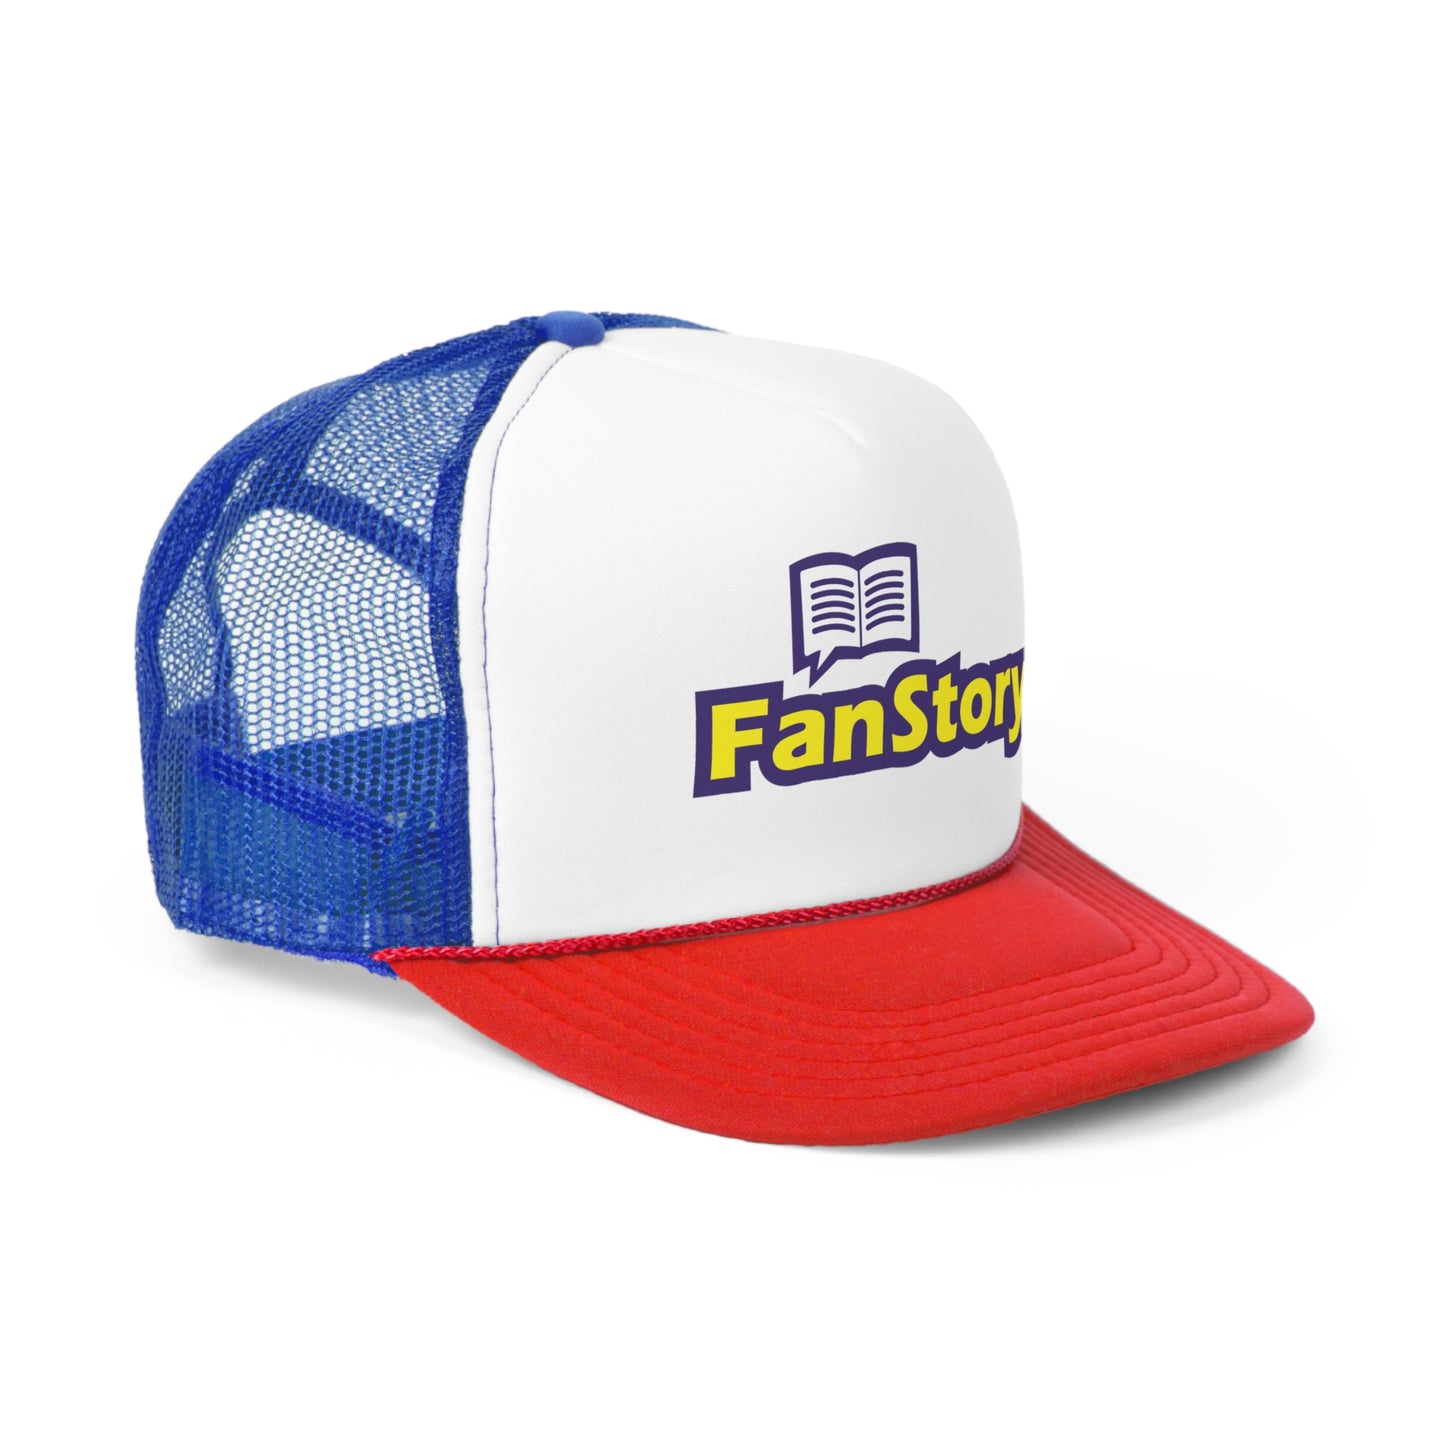 FanStory Trucker Cap